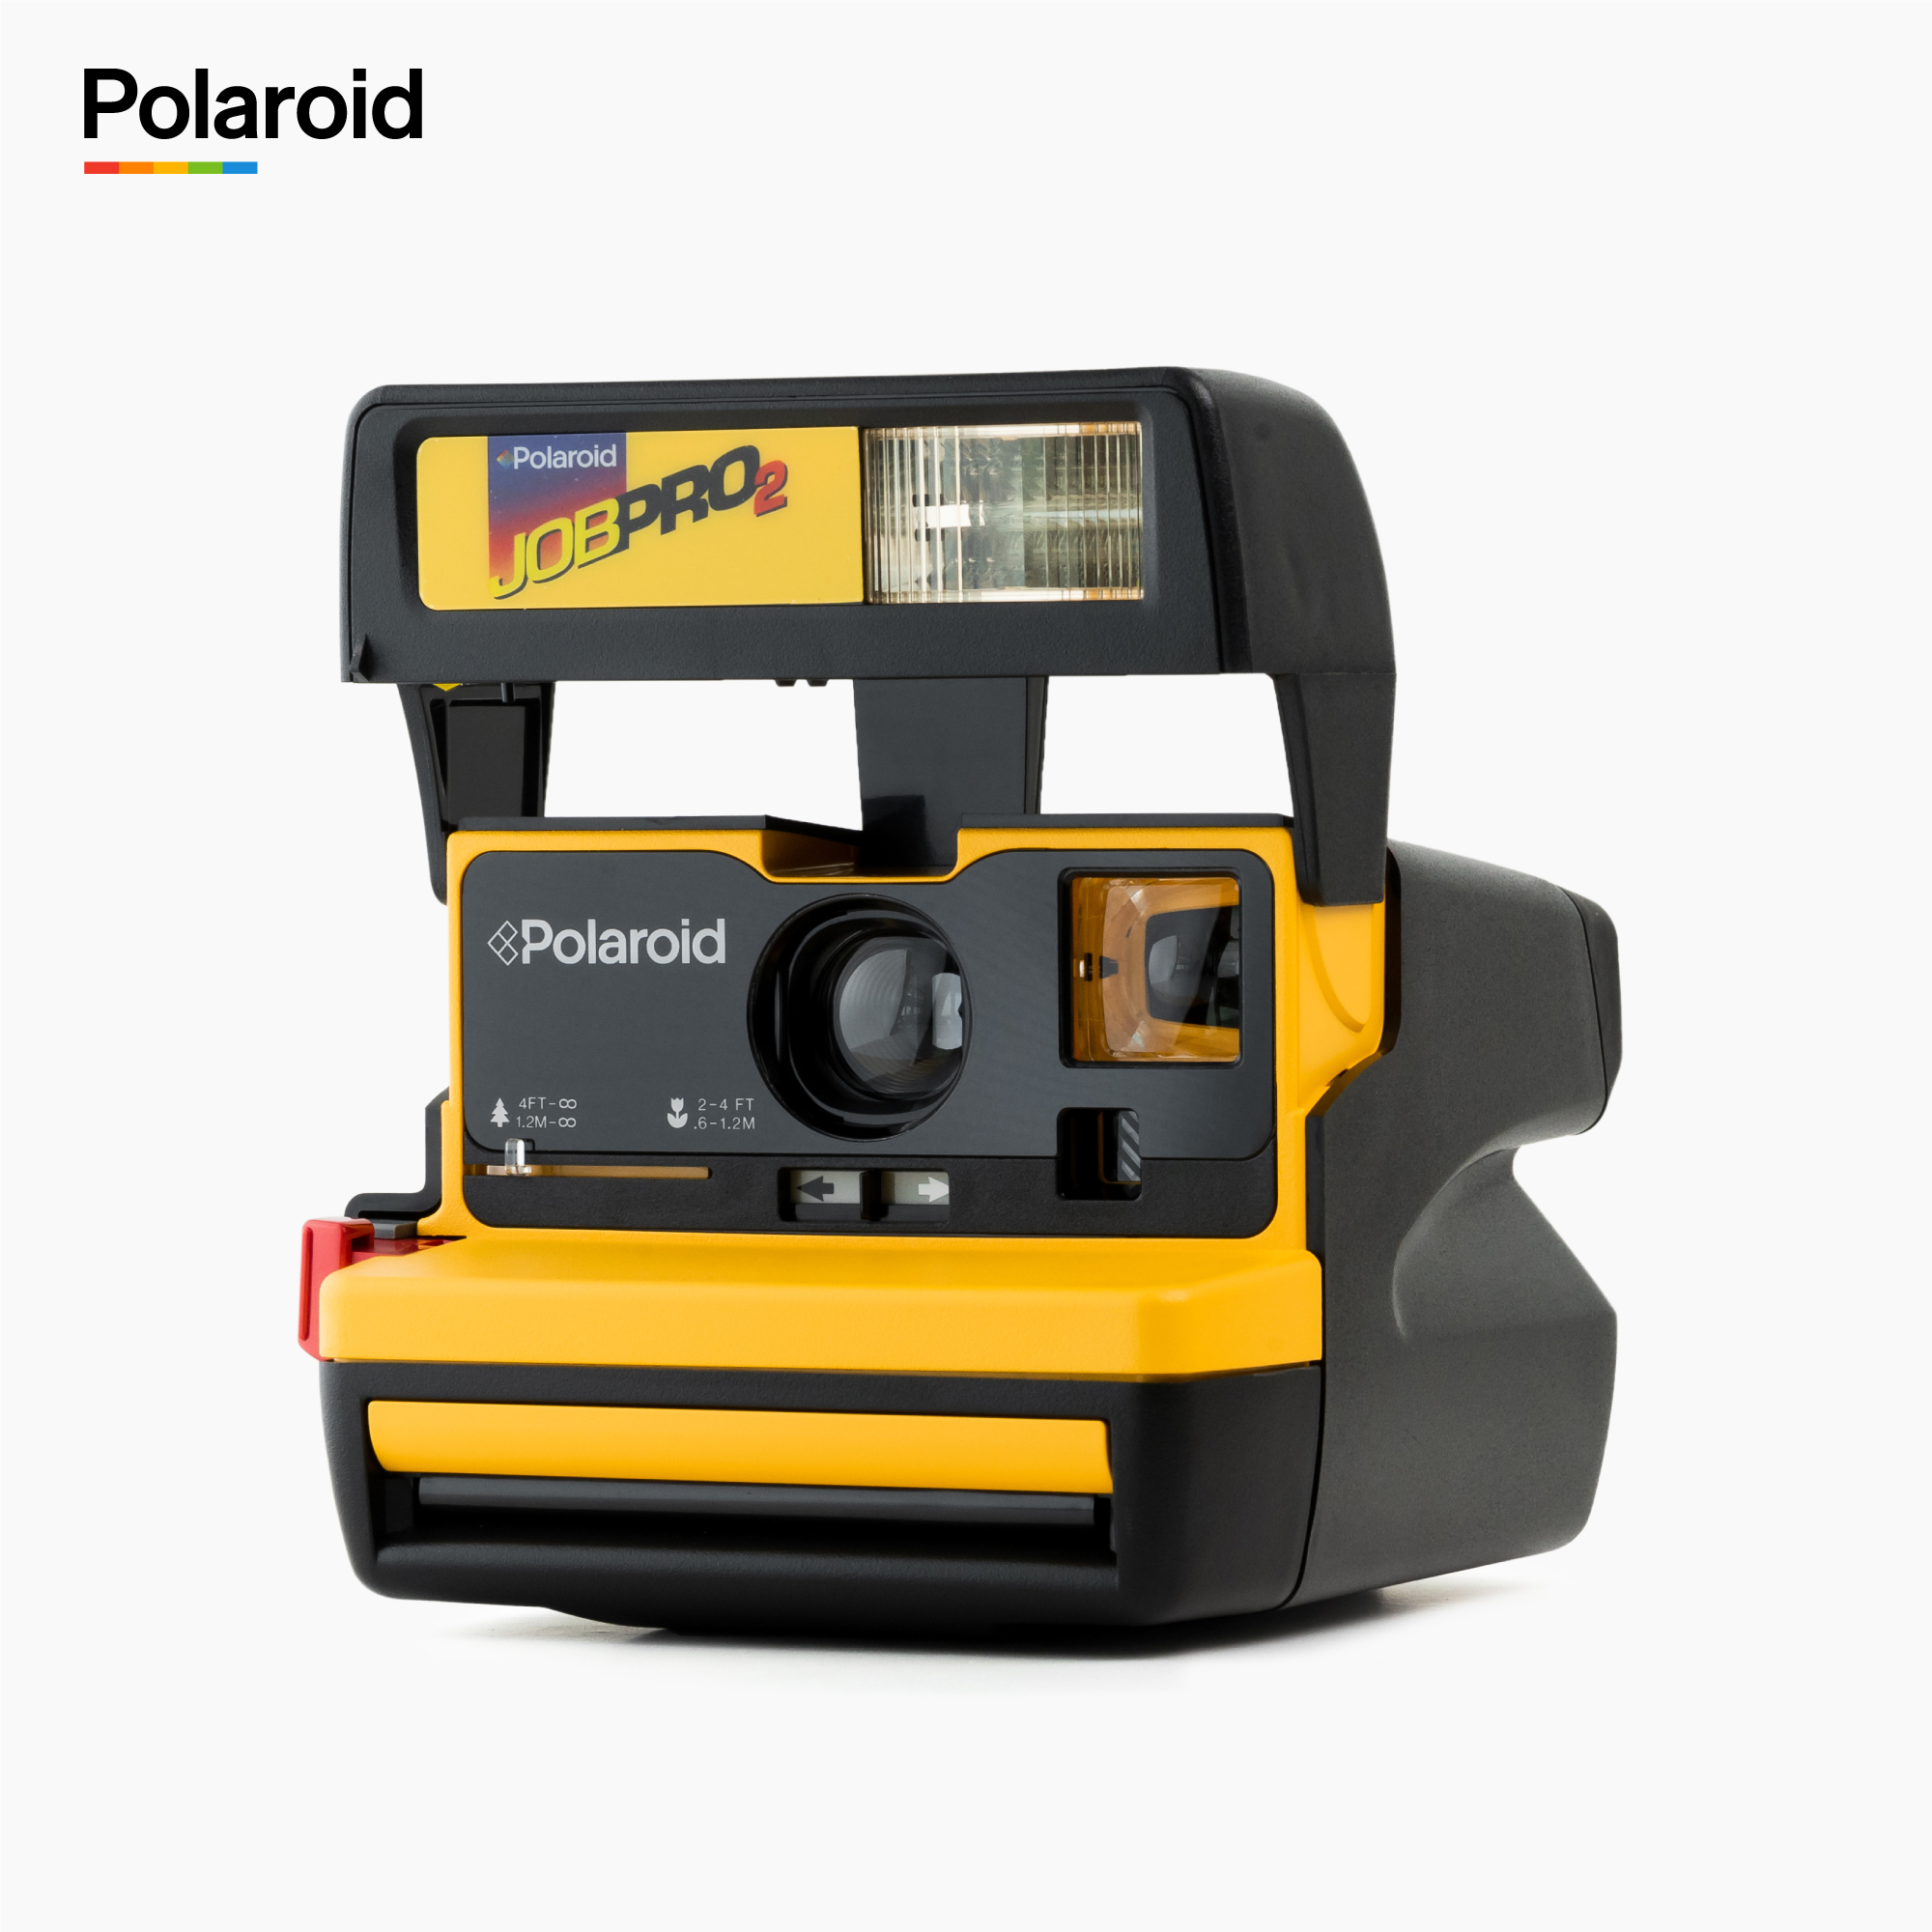 Polaroid 600 Job Pro 2 Instant Camera